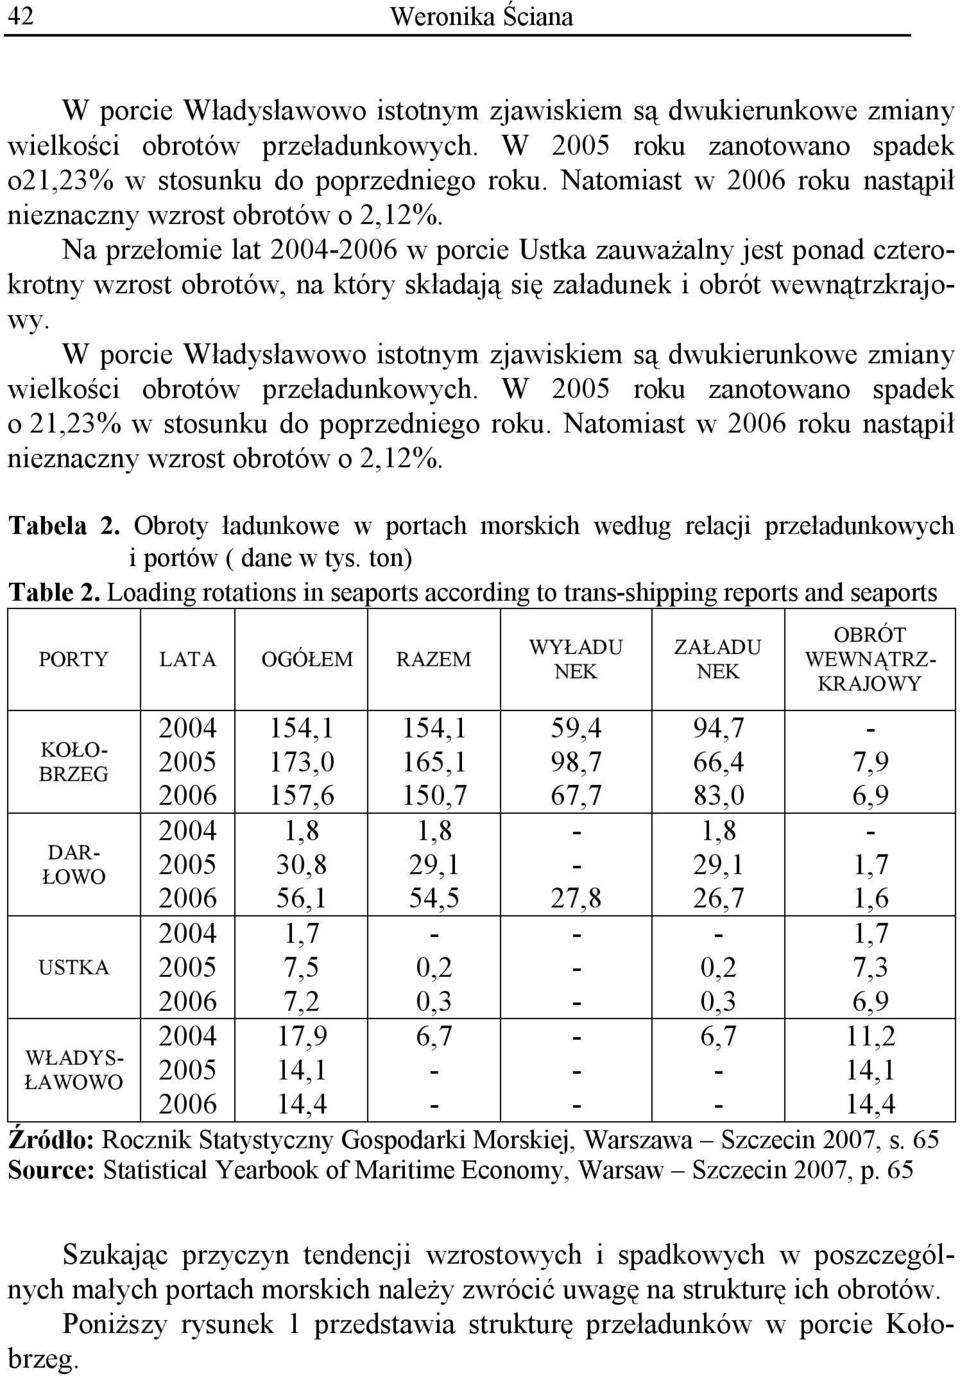 W porcie Władysławowo istotnym zjawiskiem są dwukierunkowe zmiany wielkości obrotów przeładunkowych. W roku zanotowano spadek o 21,23% w stosunku do poprzedniego roku.